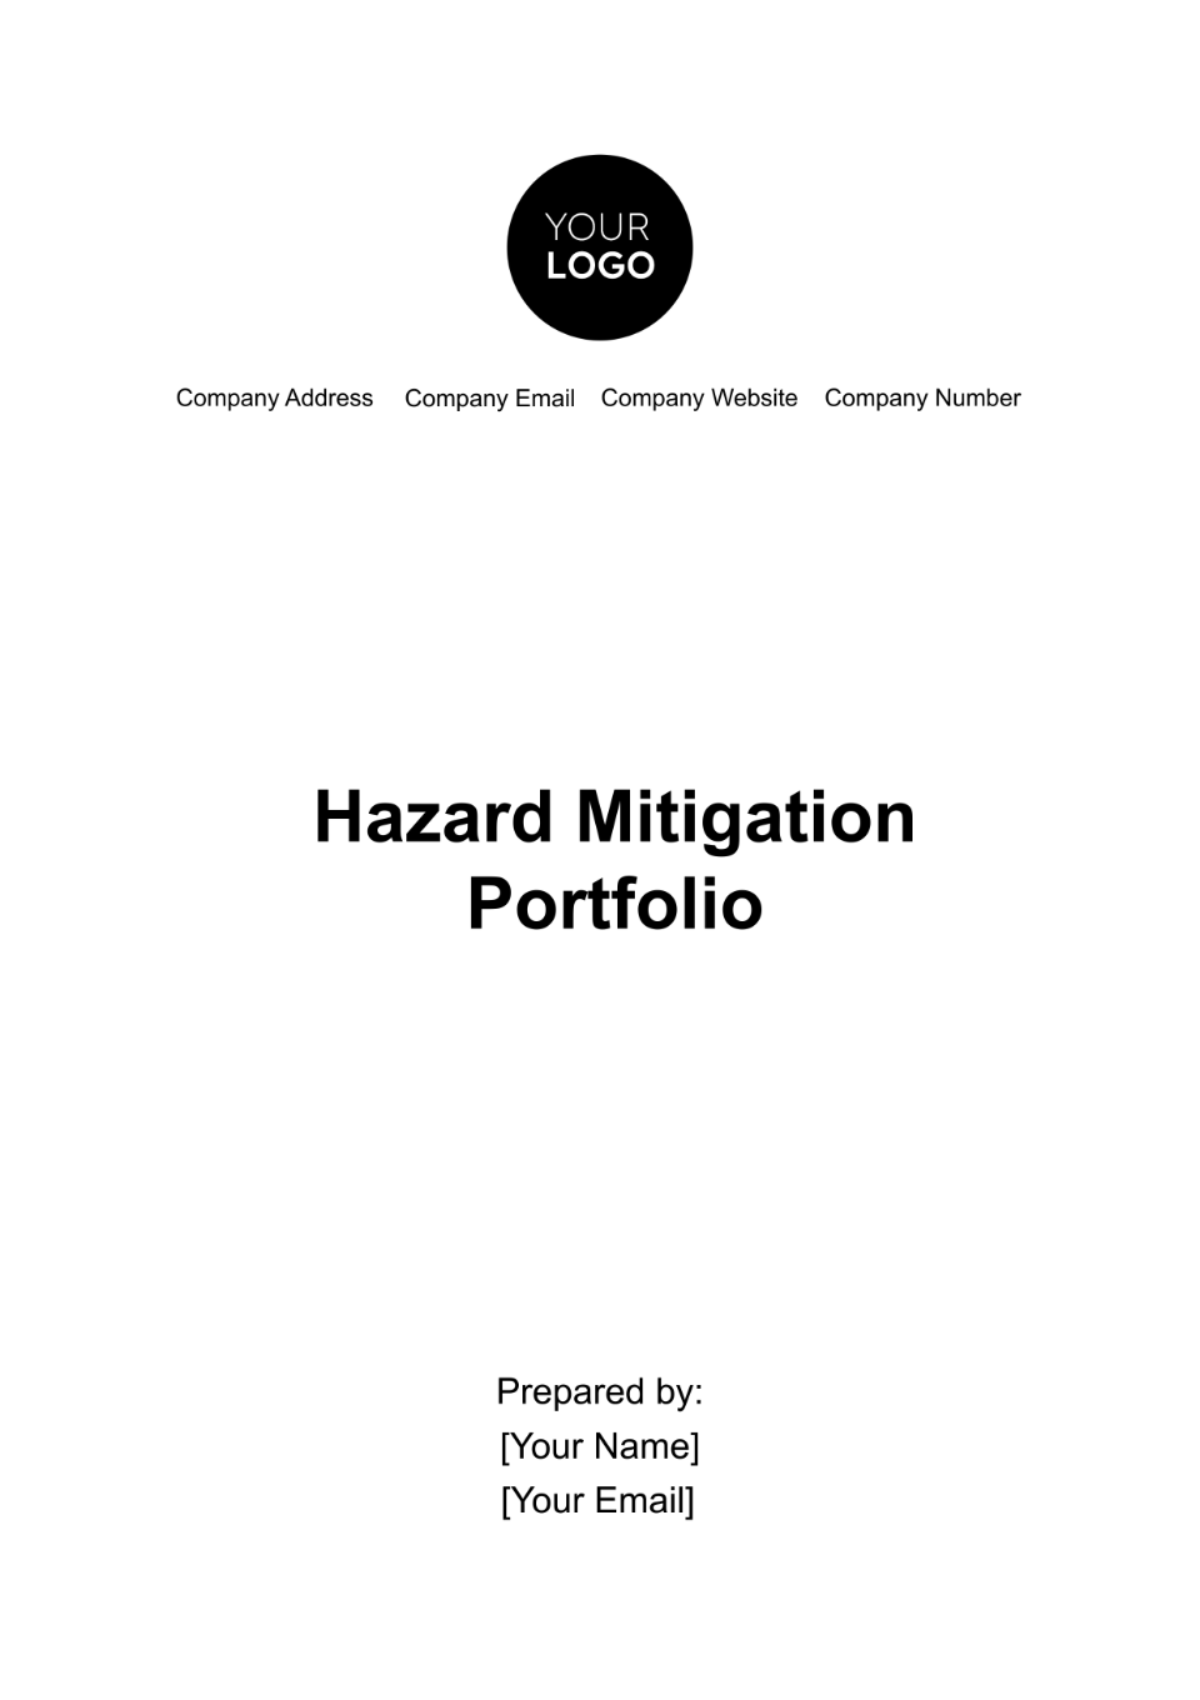 Hazard Mitigation Portfolio Template